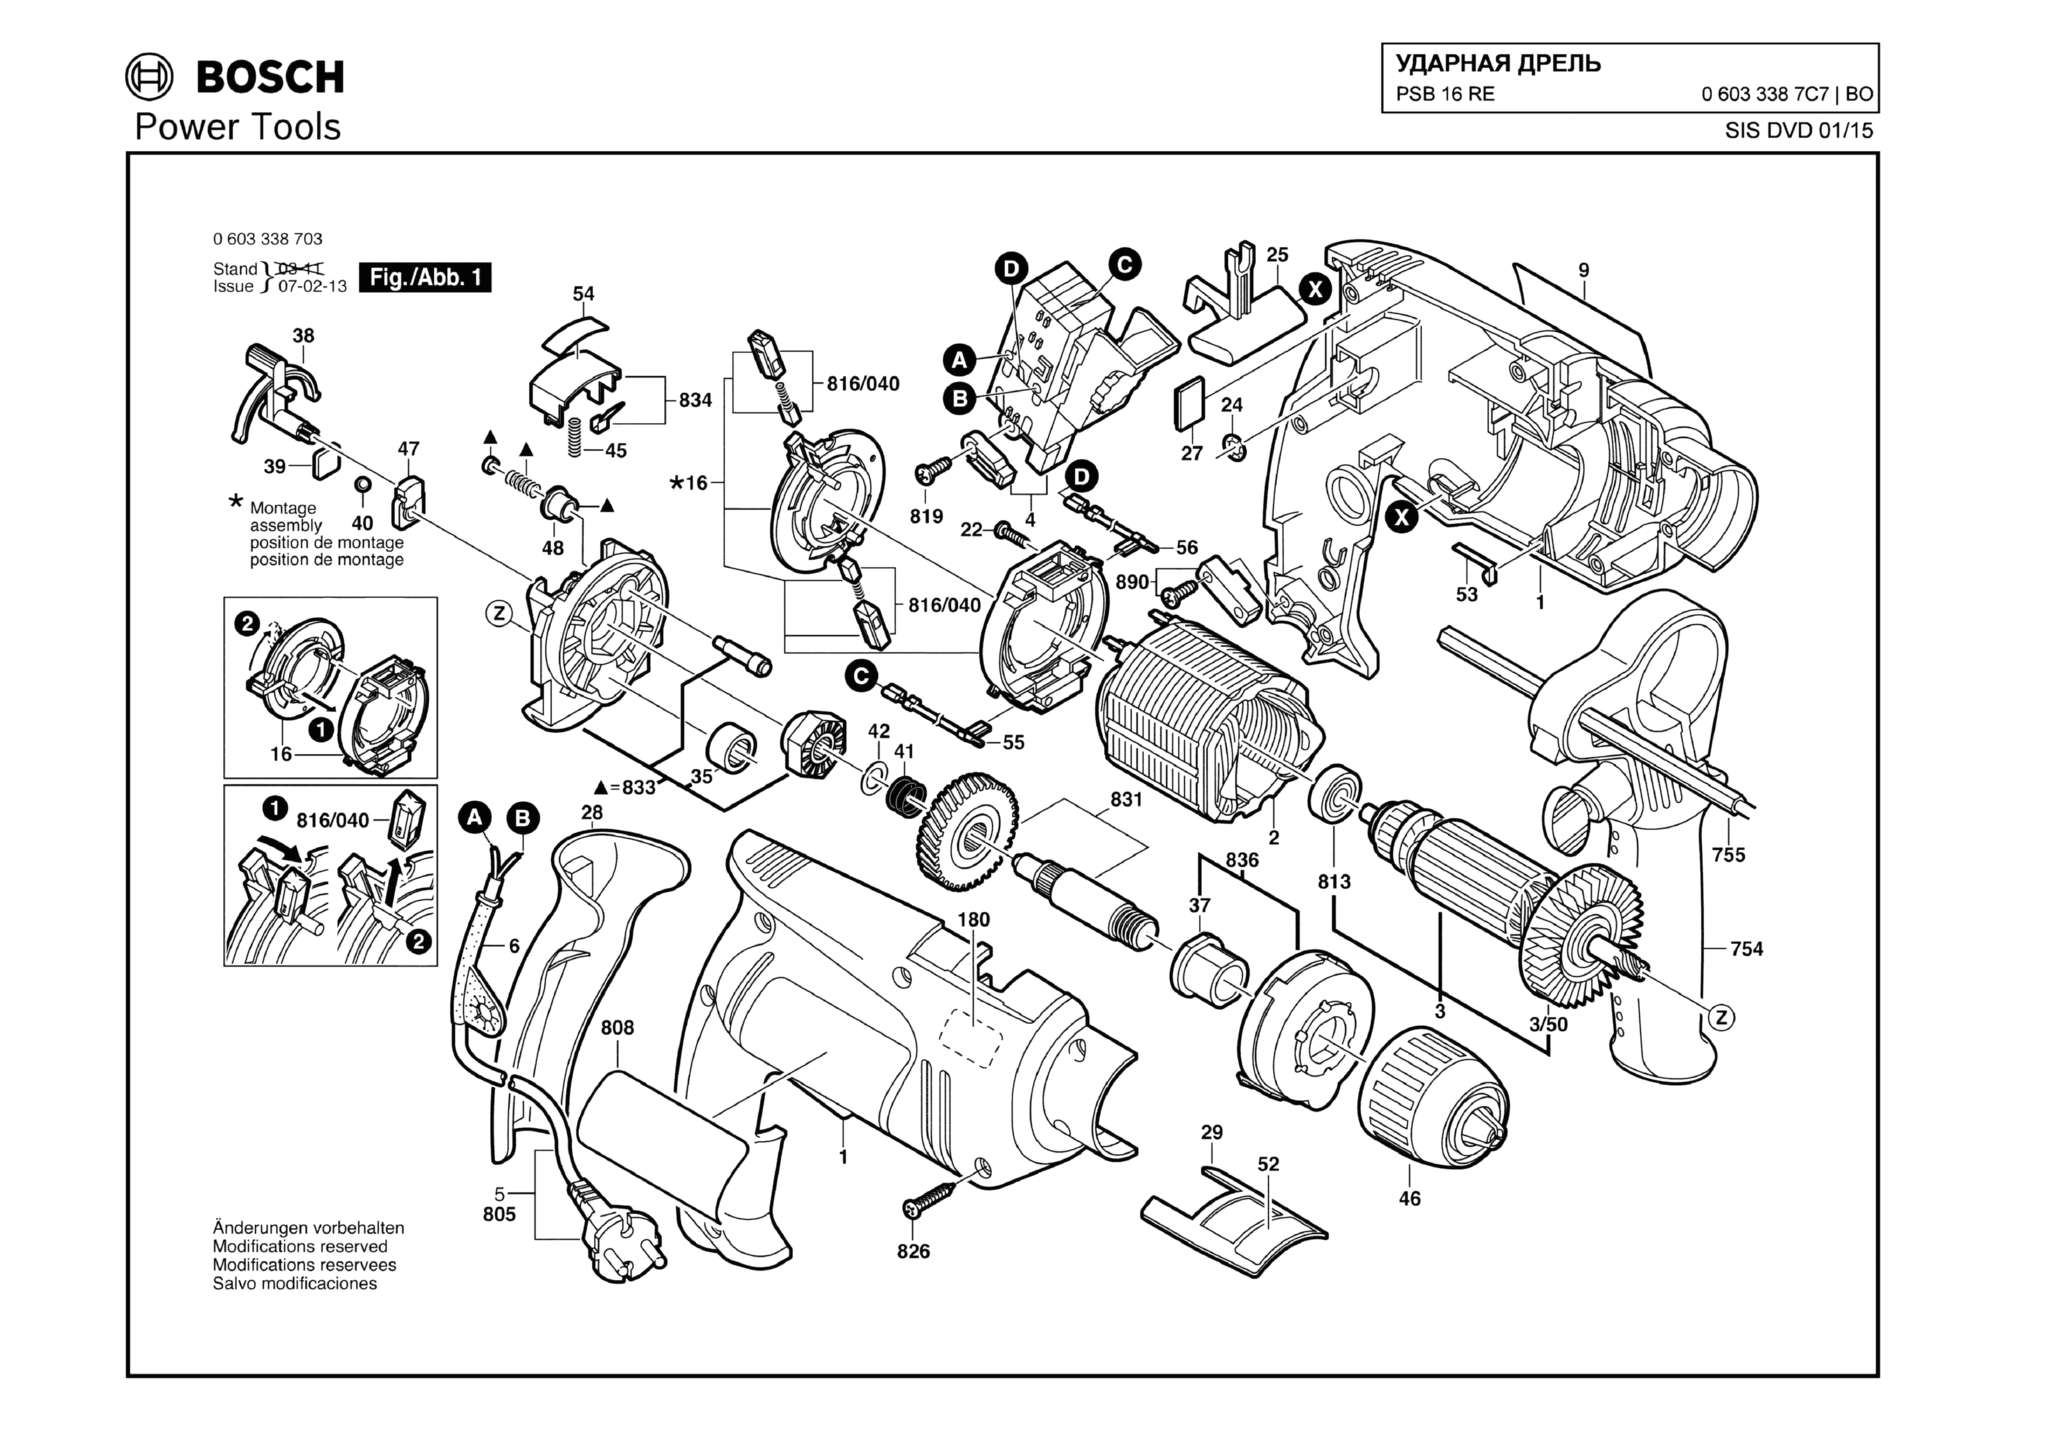 Запчасти, схема и деталировка Bosch PSB 16 RE (ТИП 06033387C7)